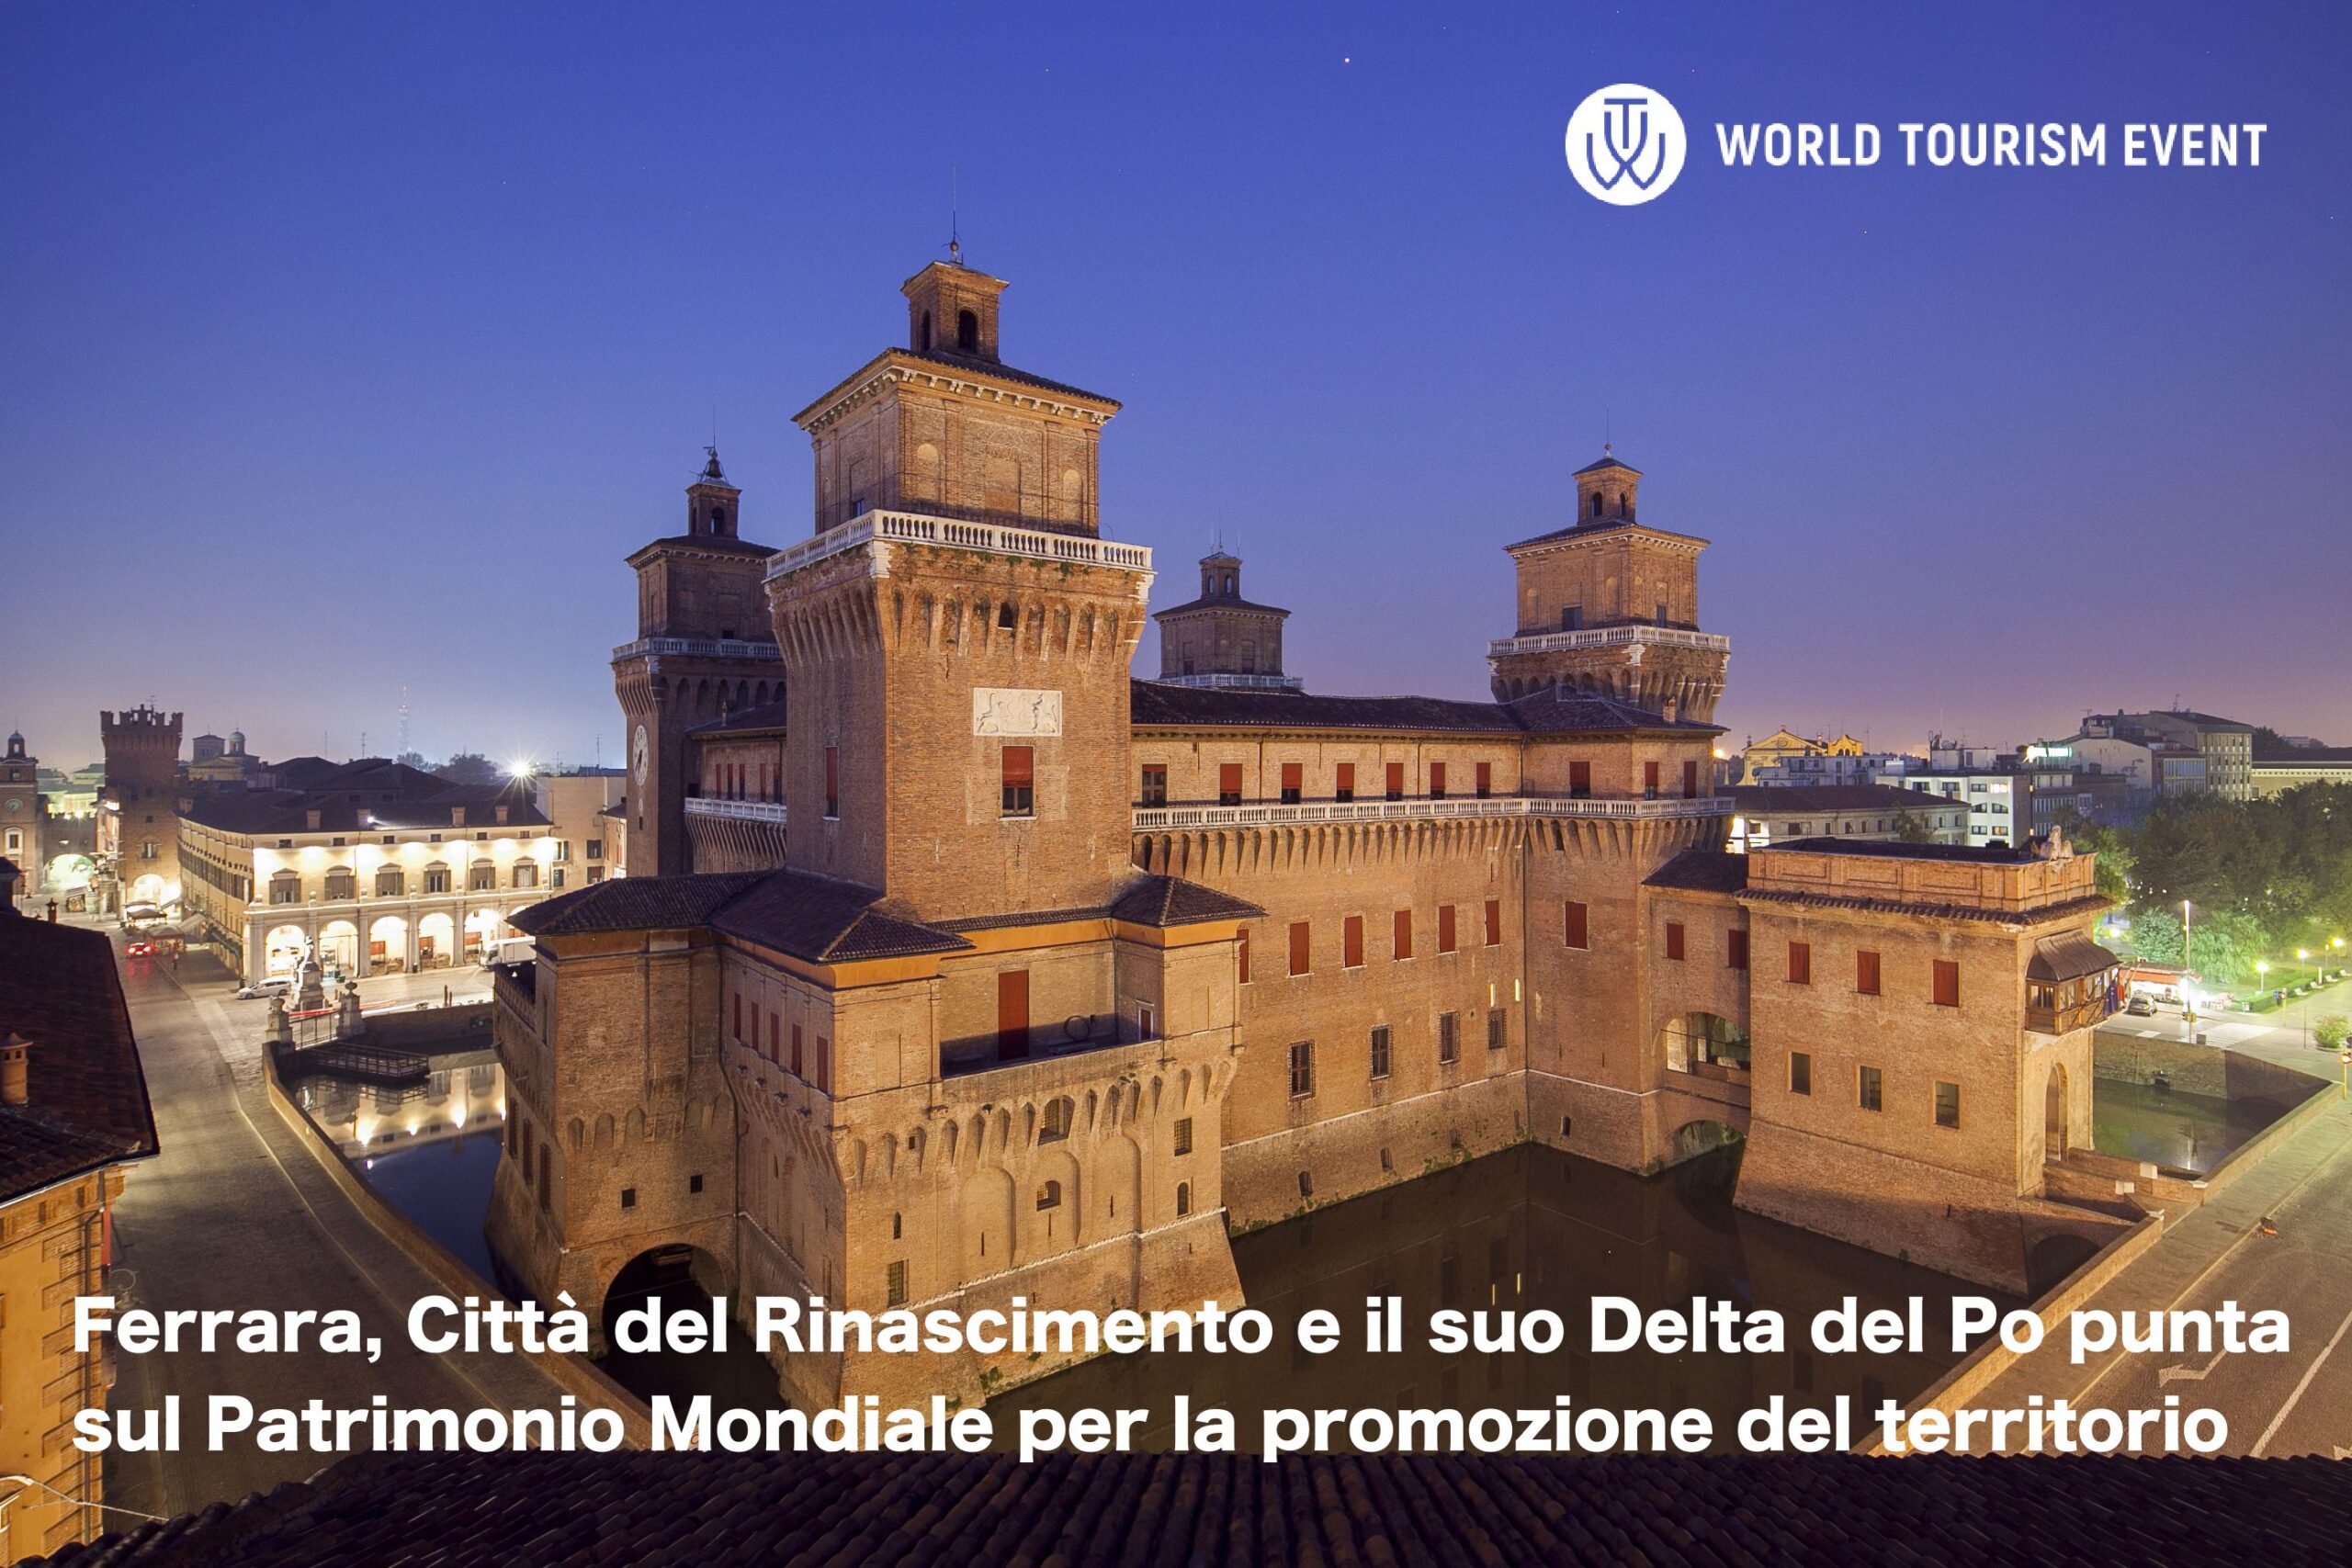 Ferrara, Città del Rinascimento e il suo Delta del Po punta sul Patrimonio Mondiale per la promozione del territorio